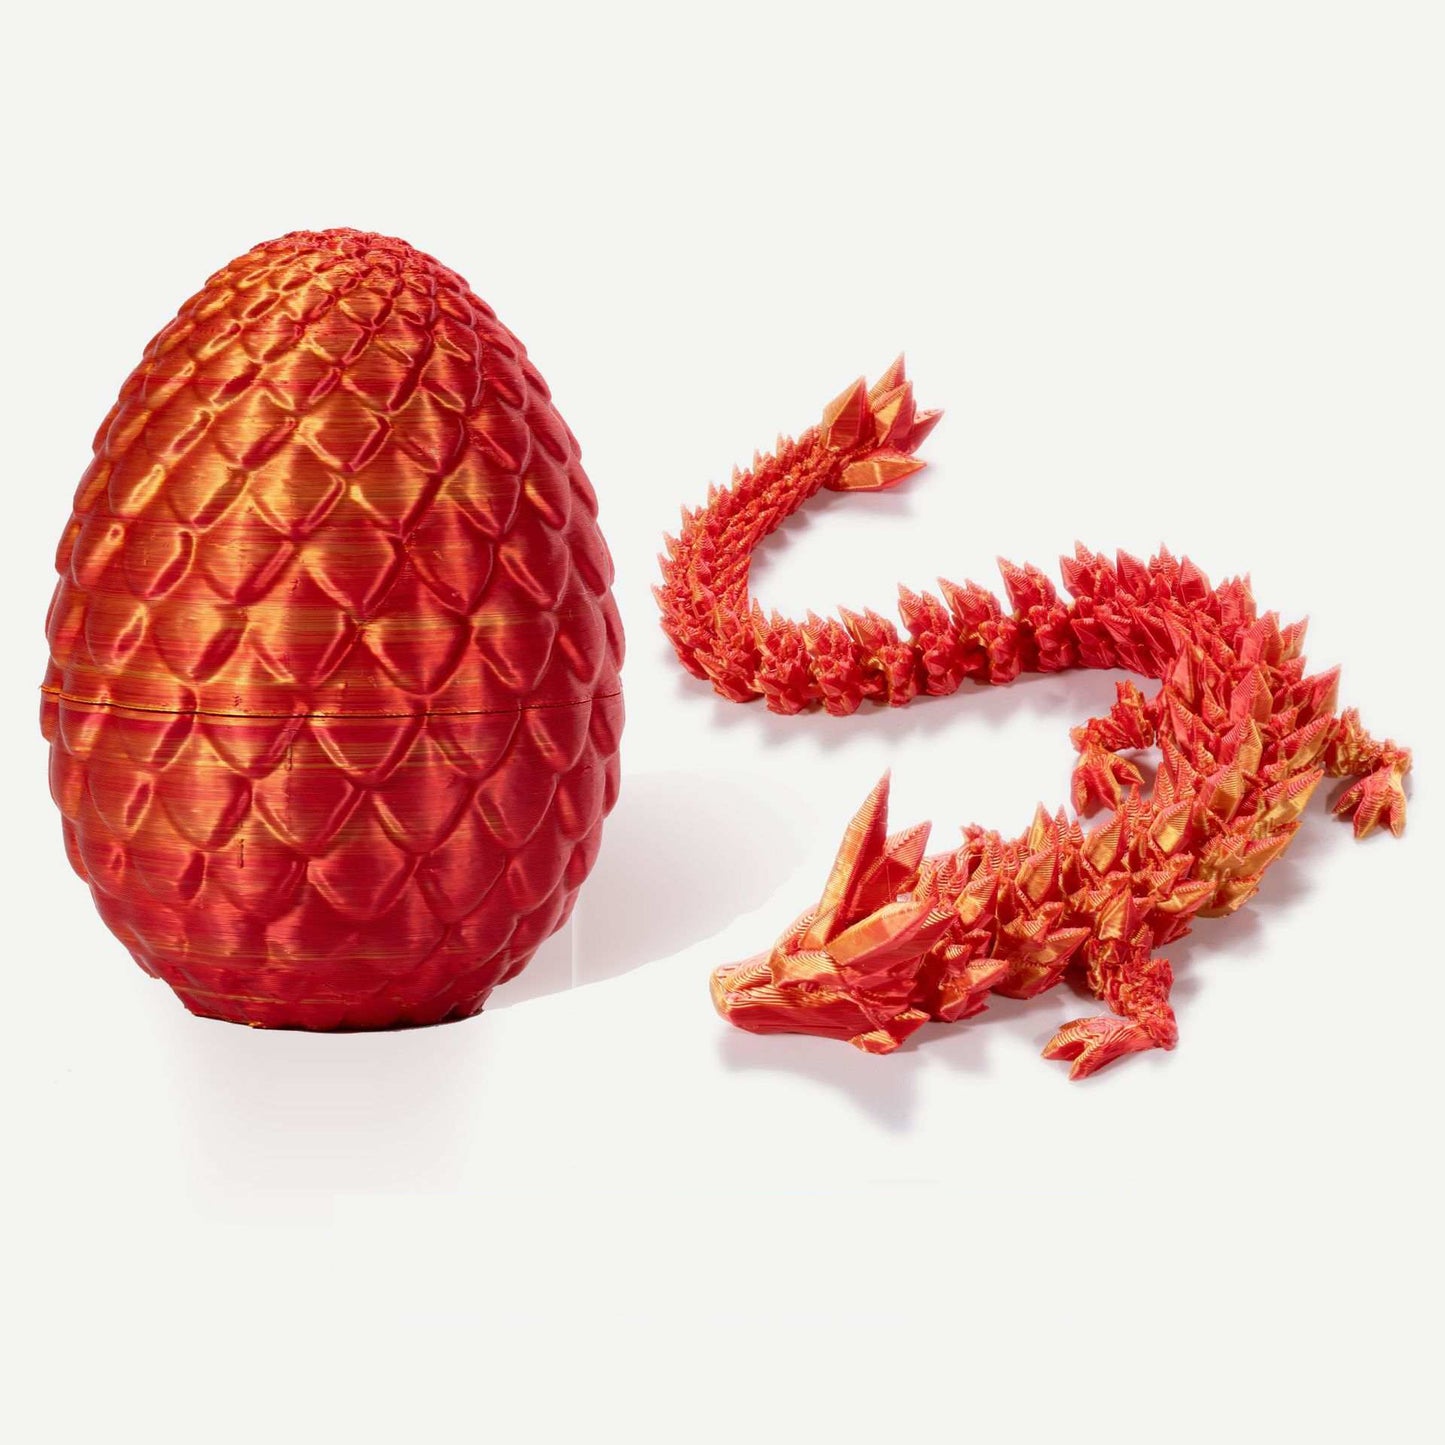 Laser 3D Printed Dragon & Egg